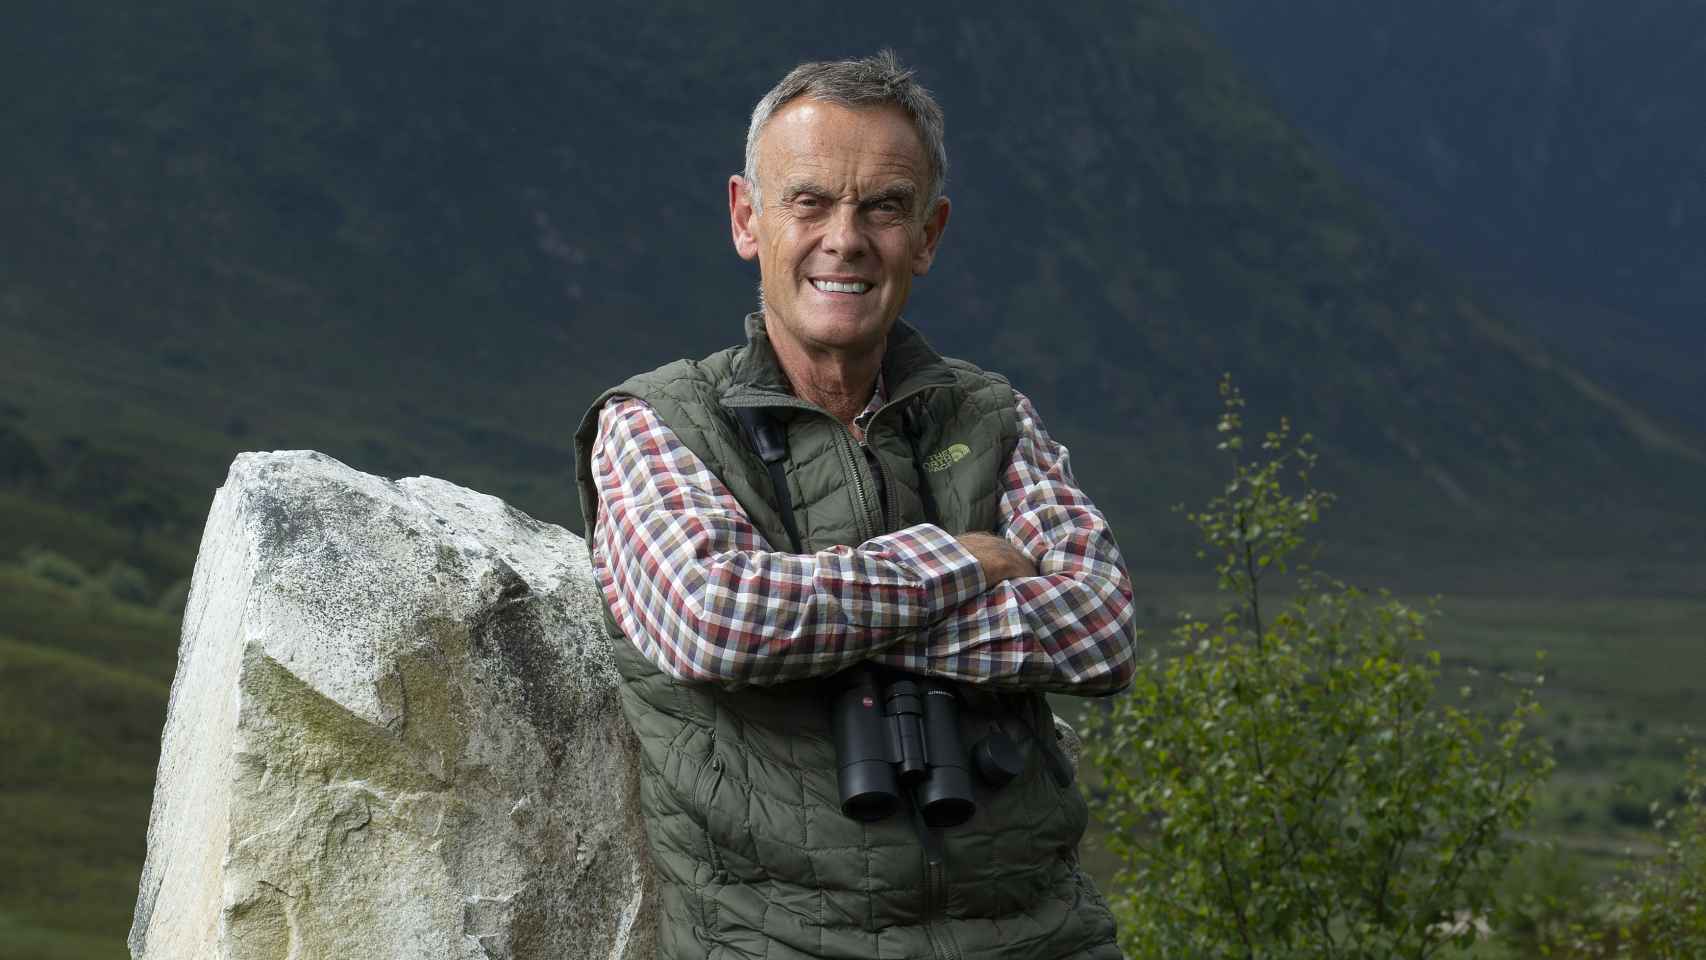 Paul Lister sonríe durante una sesión de fotos en Alladale Wilderness